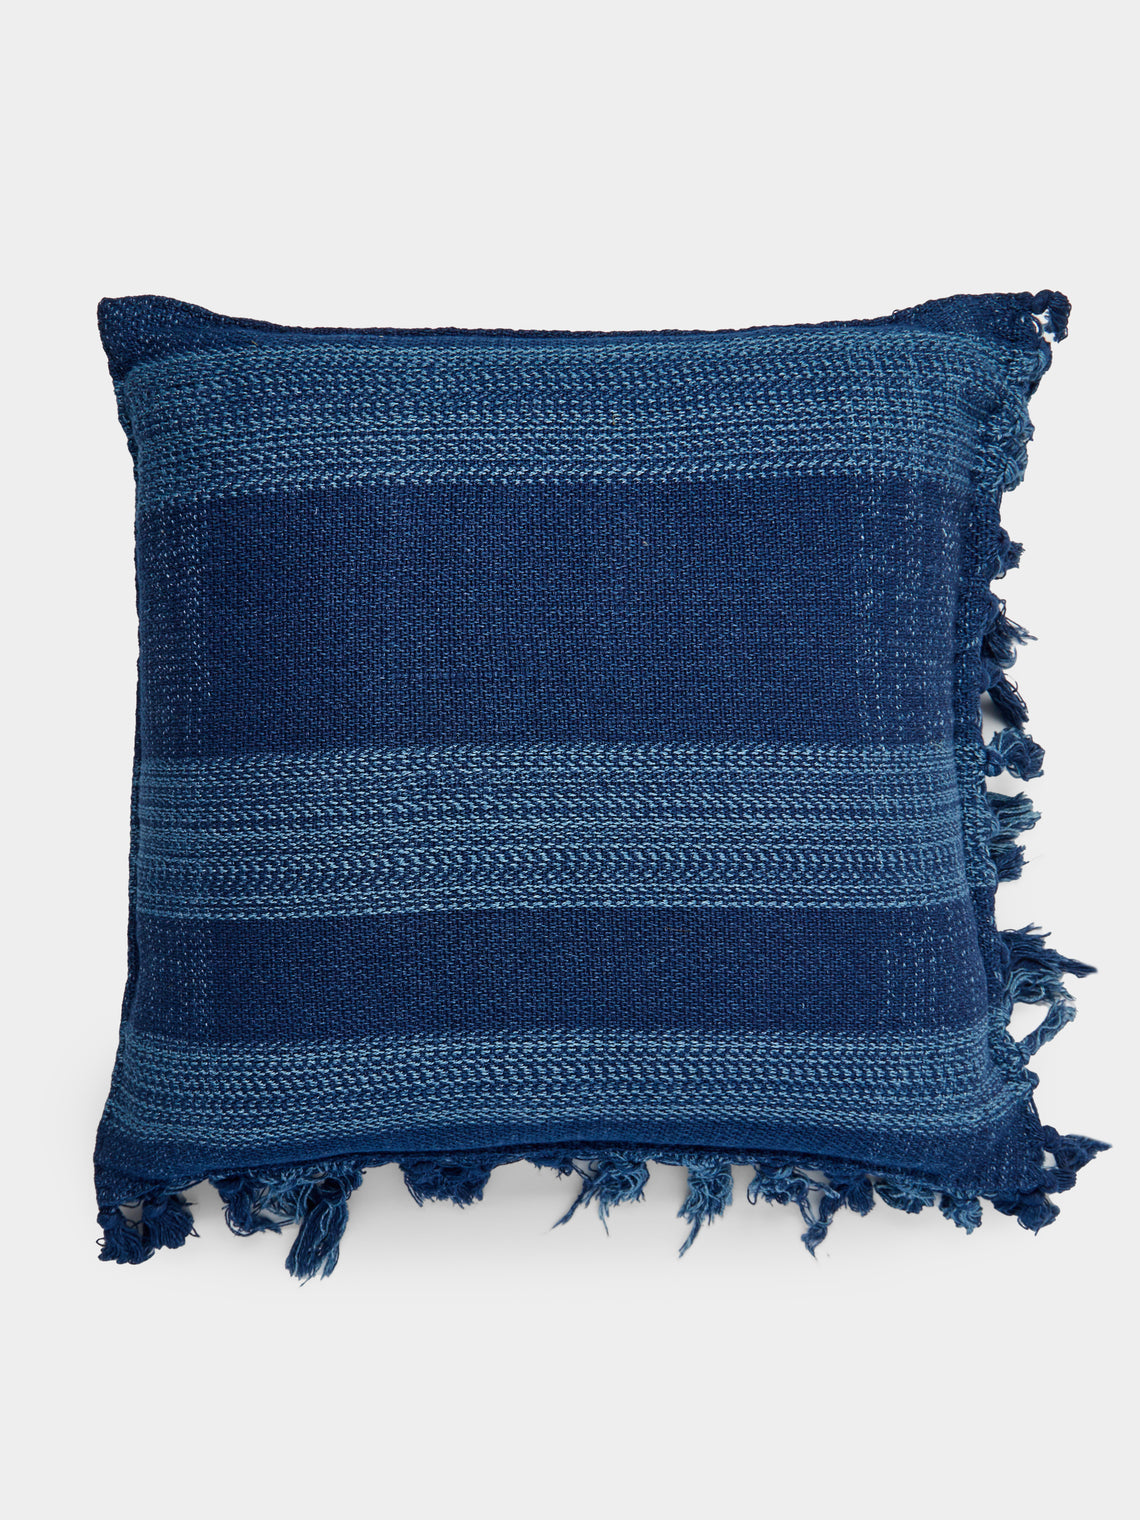 Hollie Ward - Ordahl Indigo-Dyed Handwoven Cotton Cushion -  - ABASK